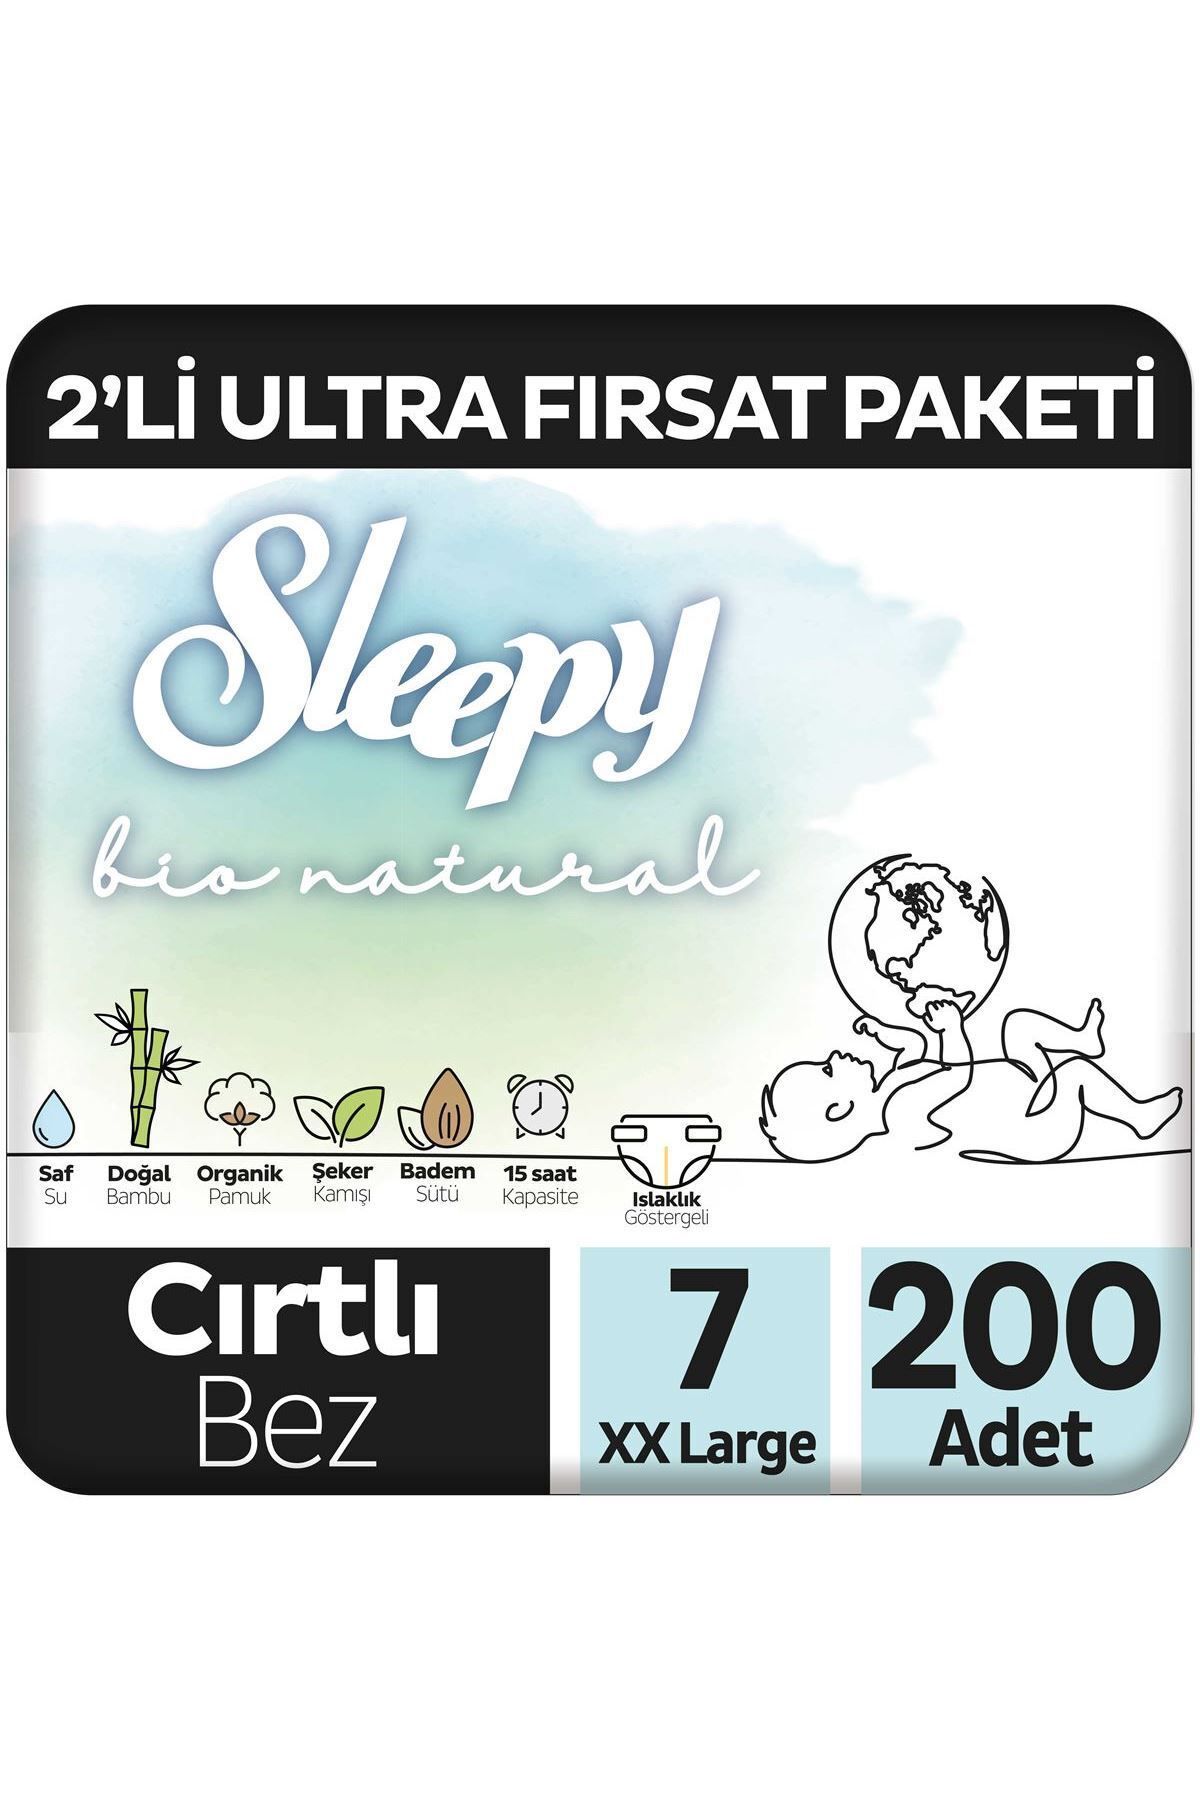 Sleepy Bio Natural 2'Li Ultra Fırsat Paketi Bebek Bezi 7 Numara Xxlarge 200 Adet